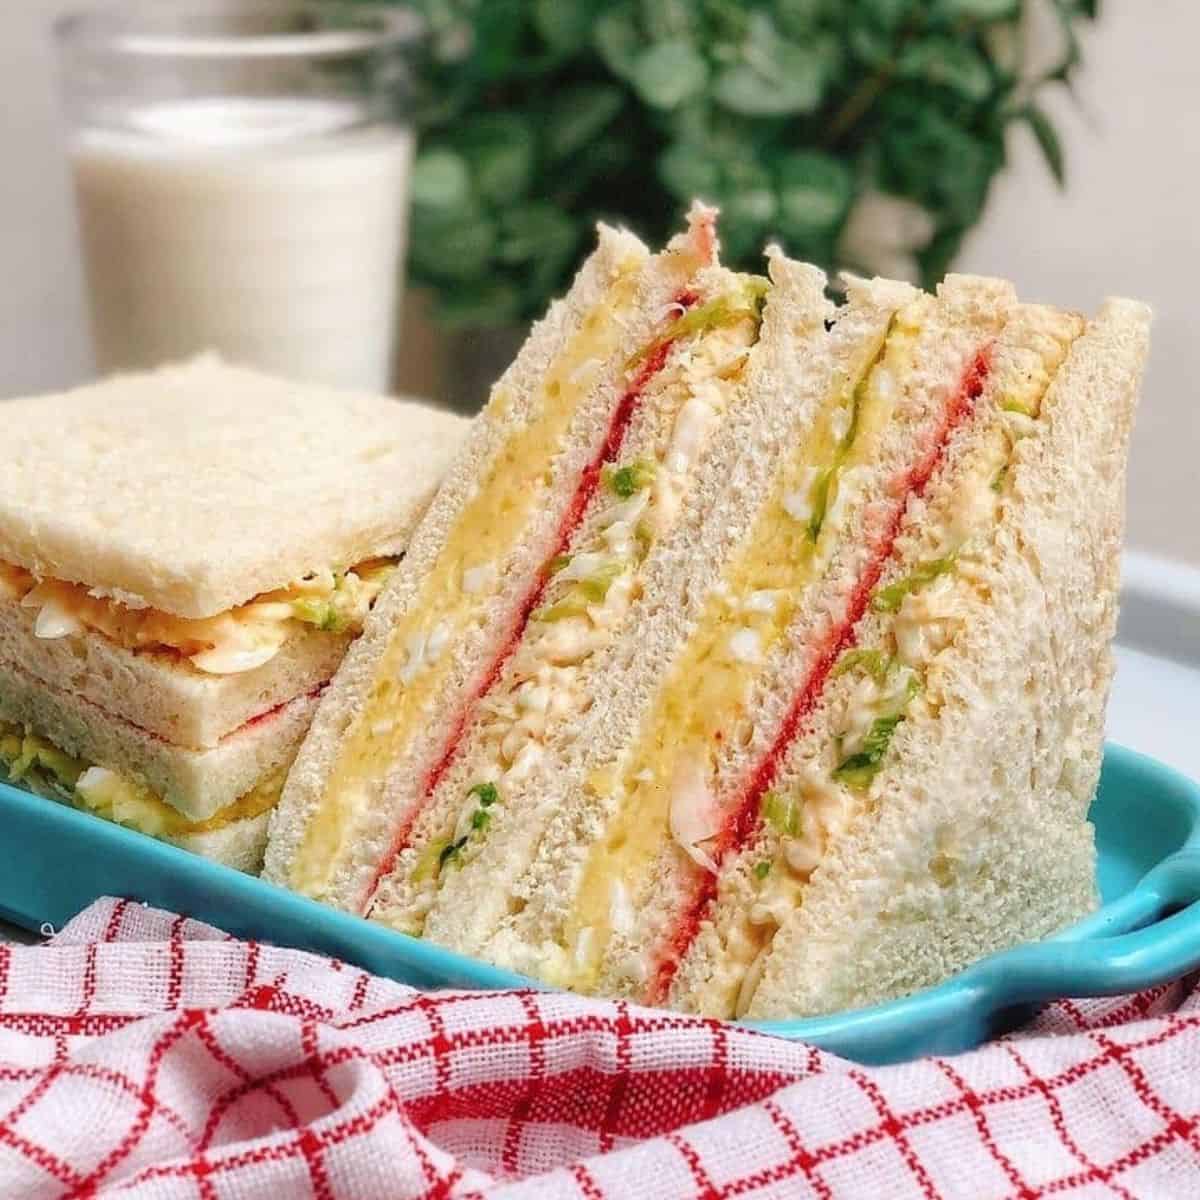 perdre du poids et manger un sandwich